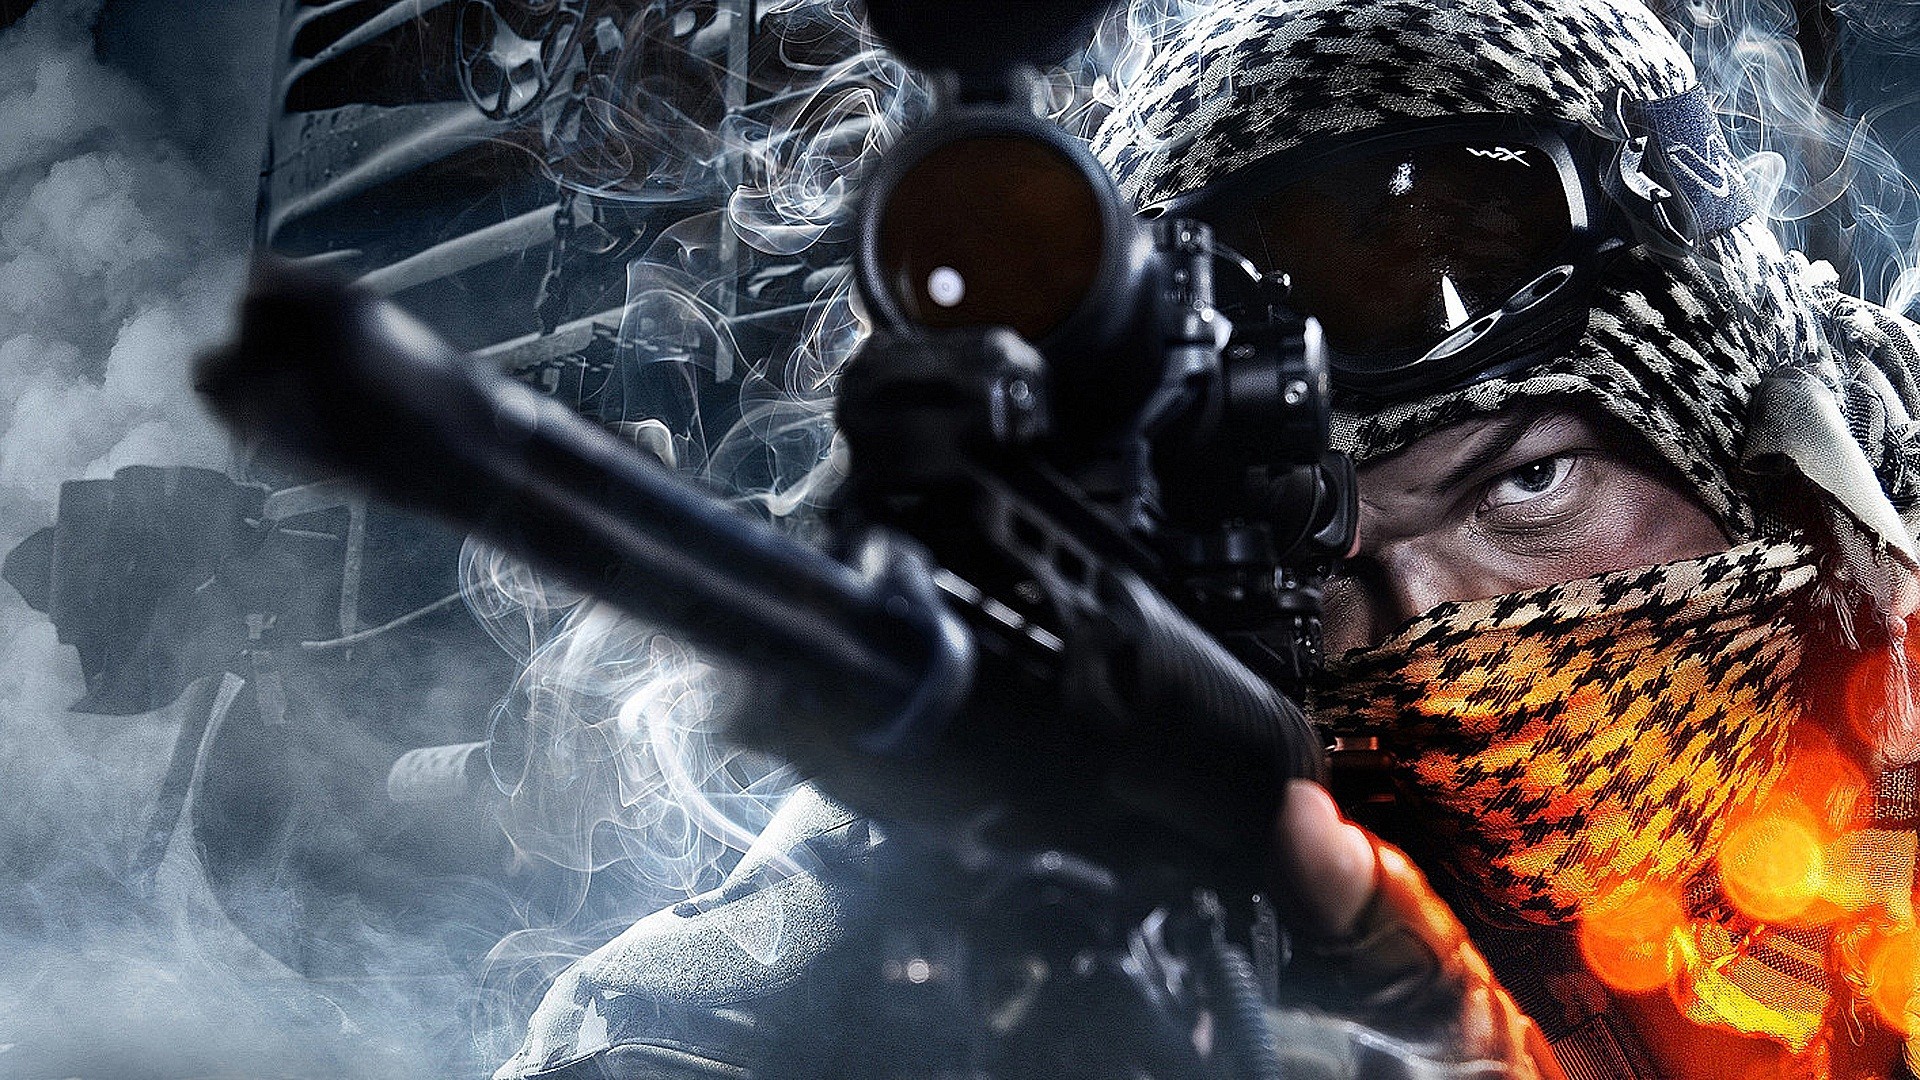 Battlefield 3, Sniper Rifle Wallpaper